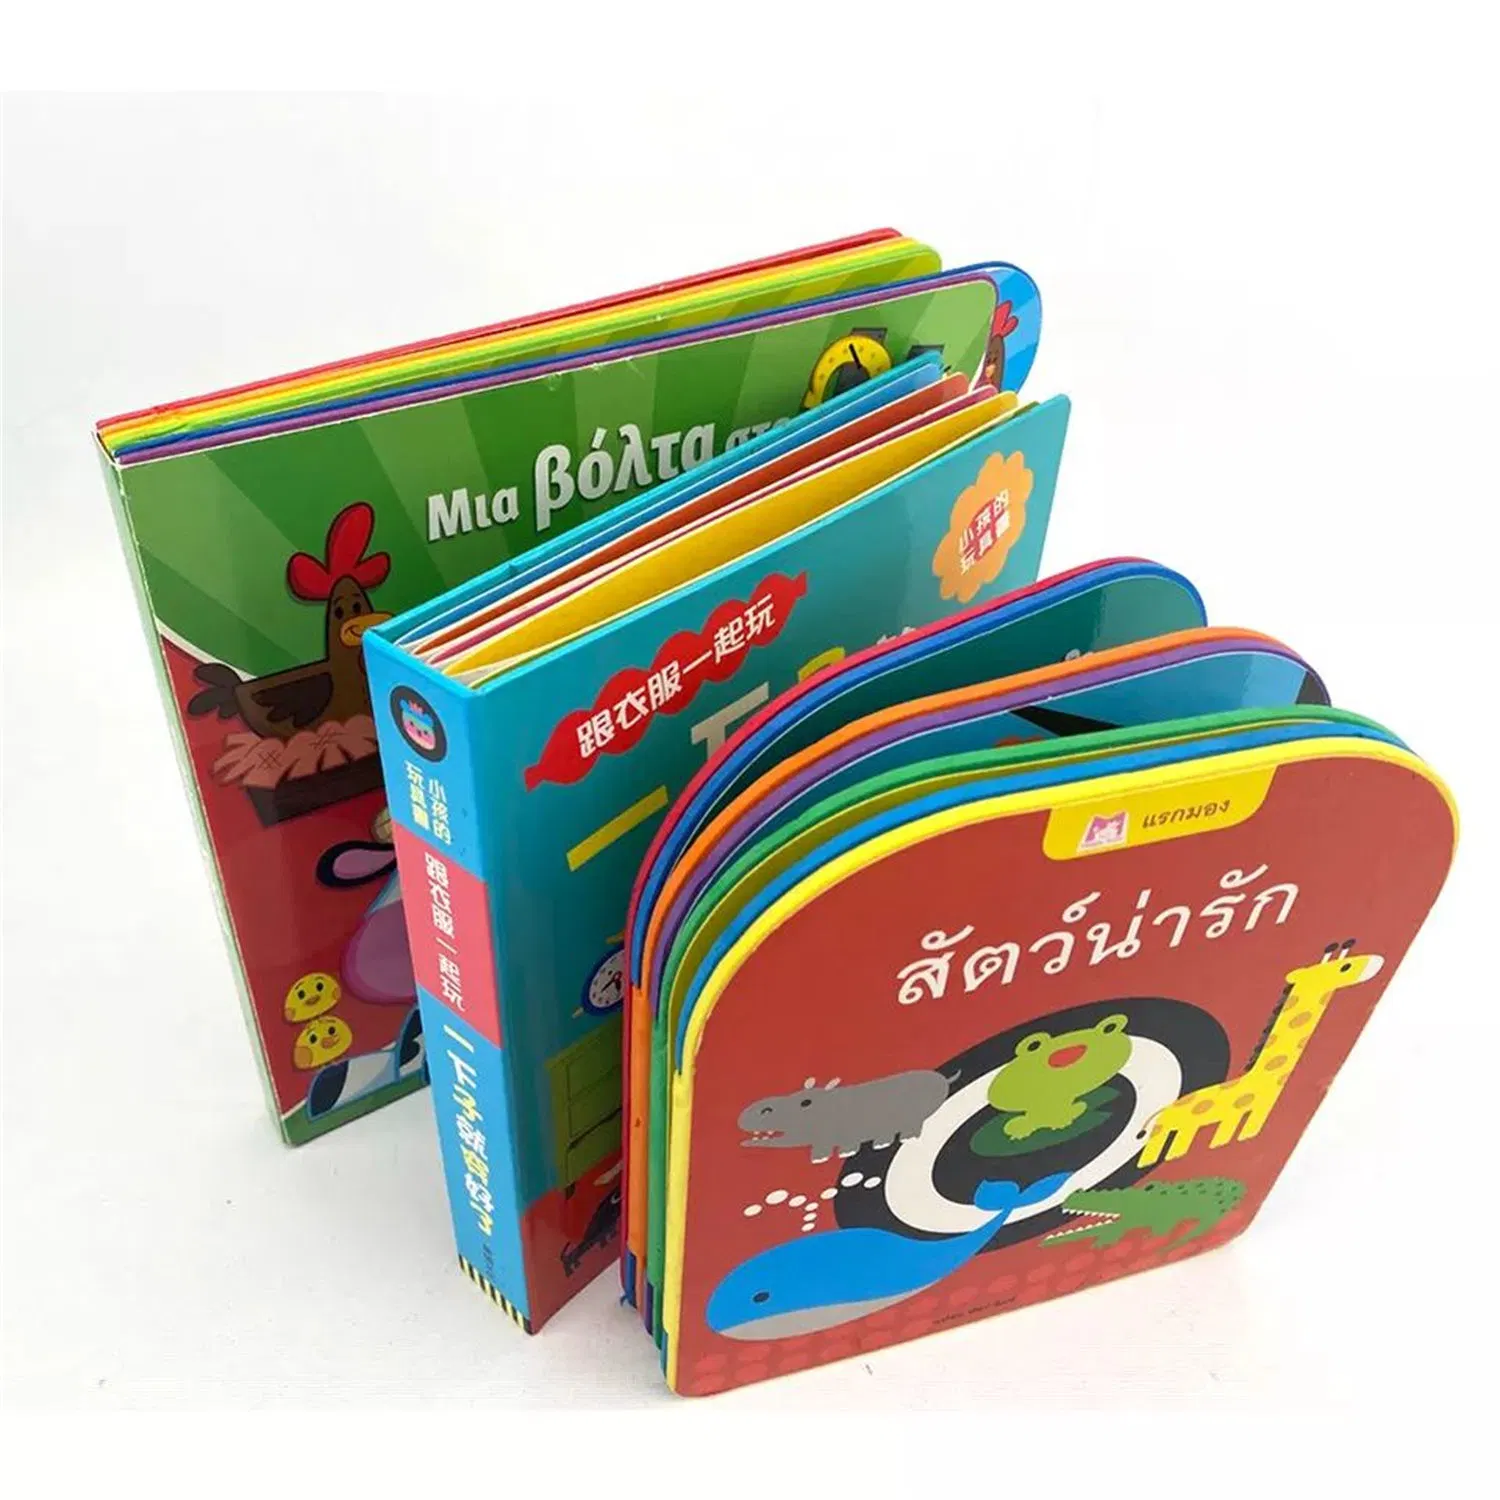 OEM/ODM детей' S книг звуковых пособий по вопросам сертификации игрушек для детей детей